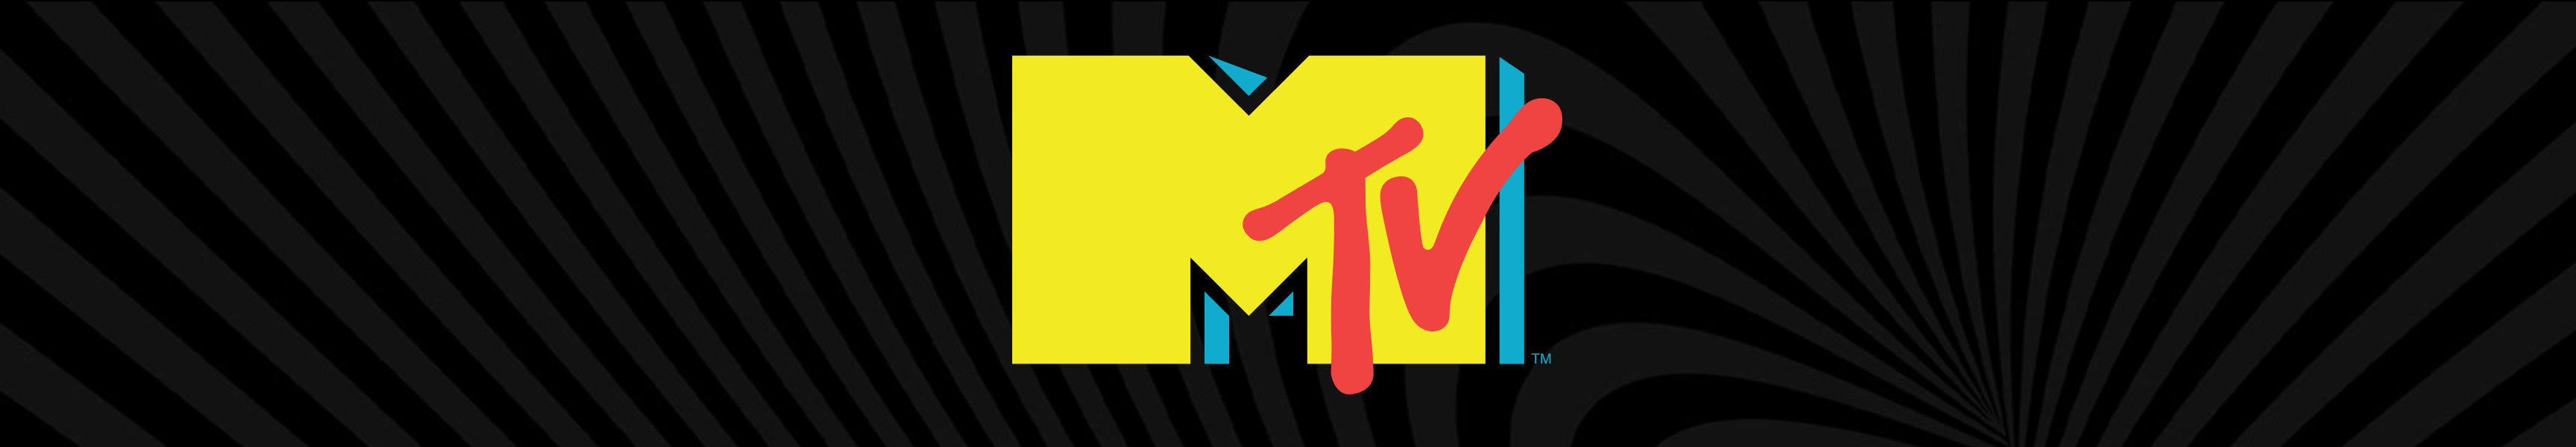 Matraces de MTV